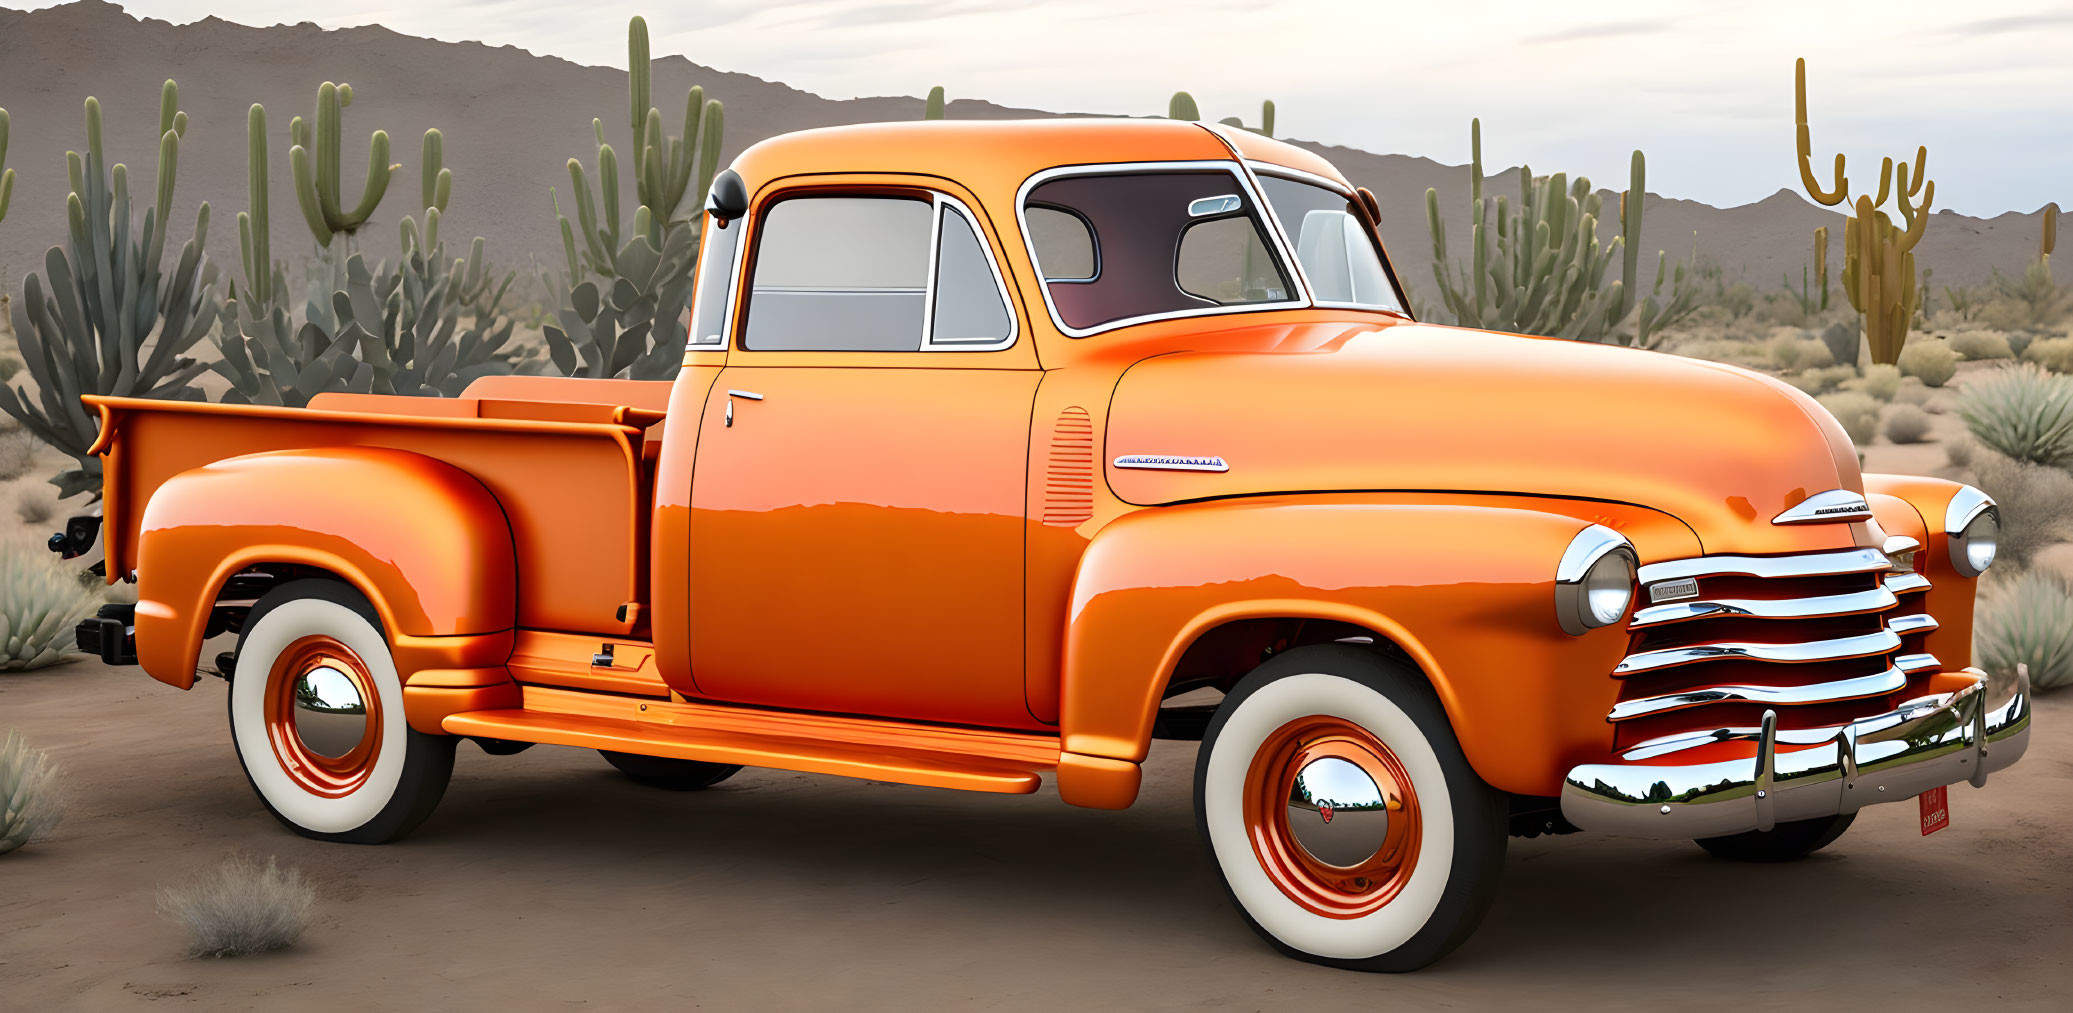 1950 Chevrolet pick-up in Arizona